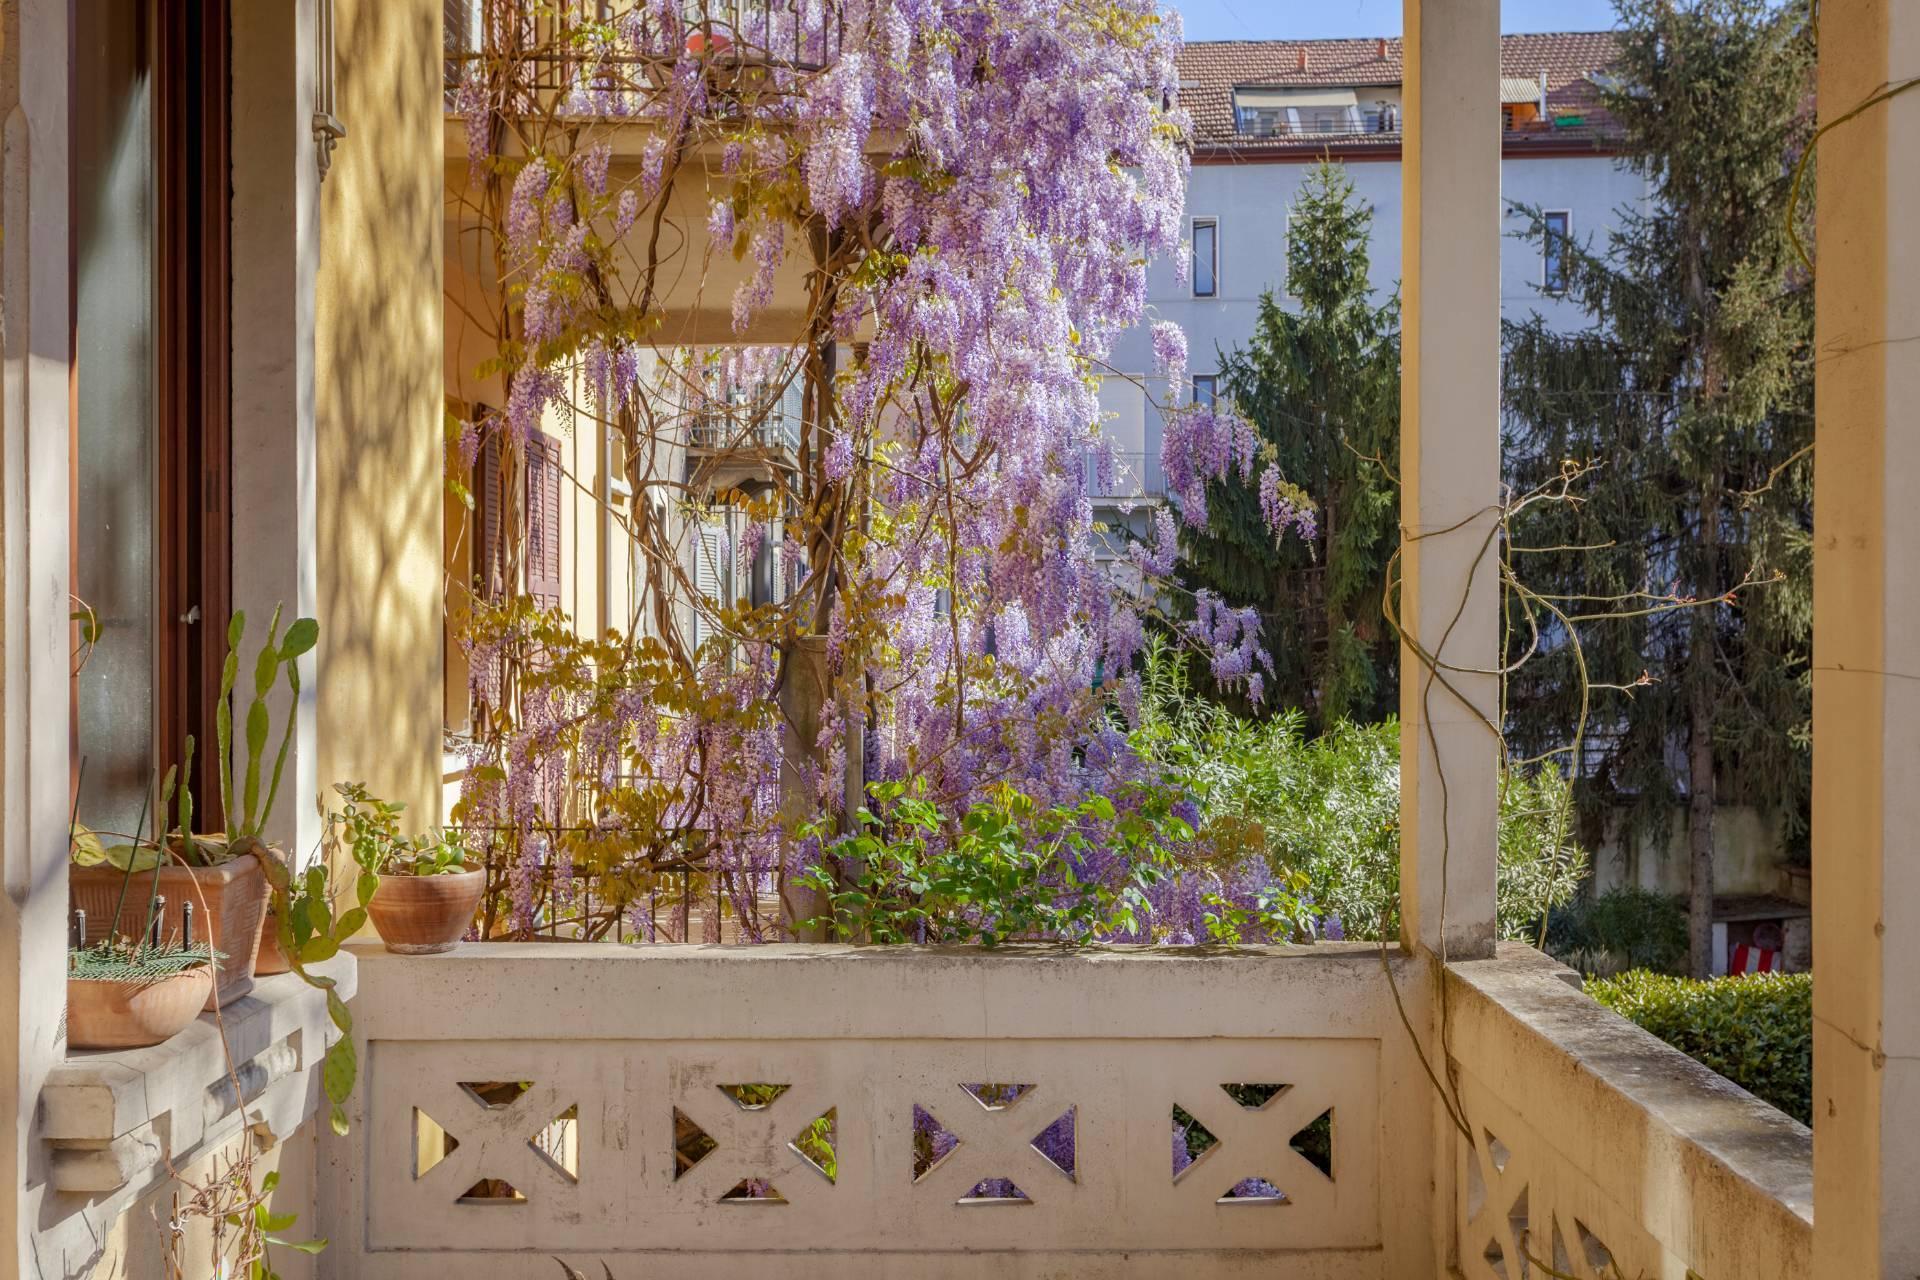 Elegant residence overlooking a lush flower garden - 3